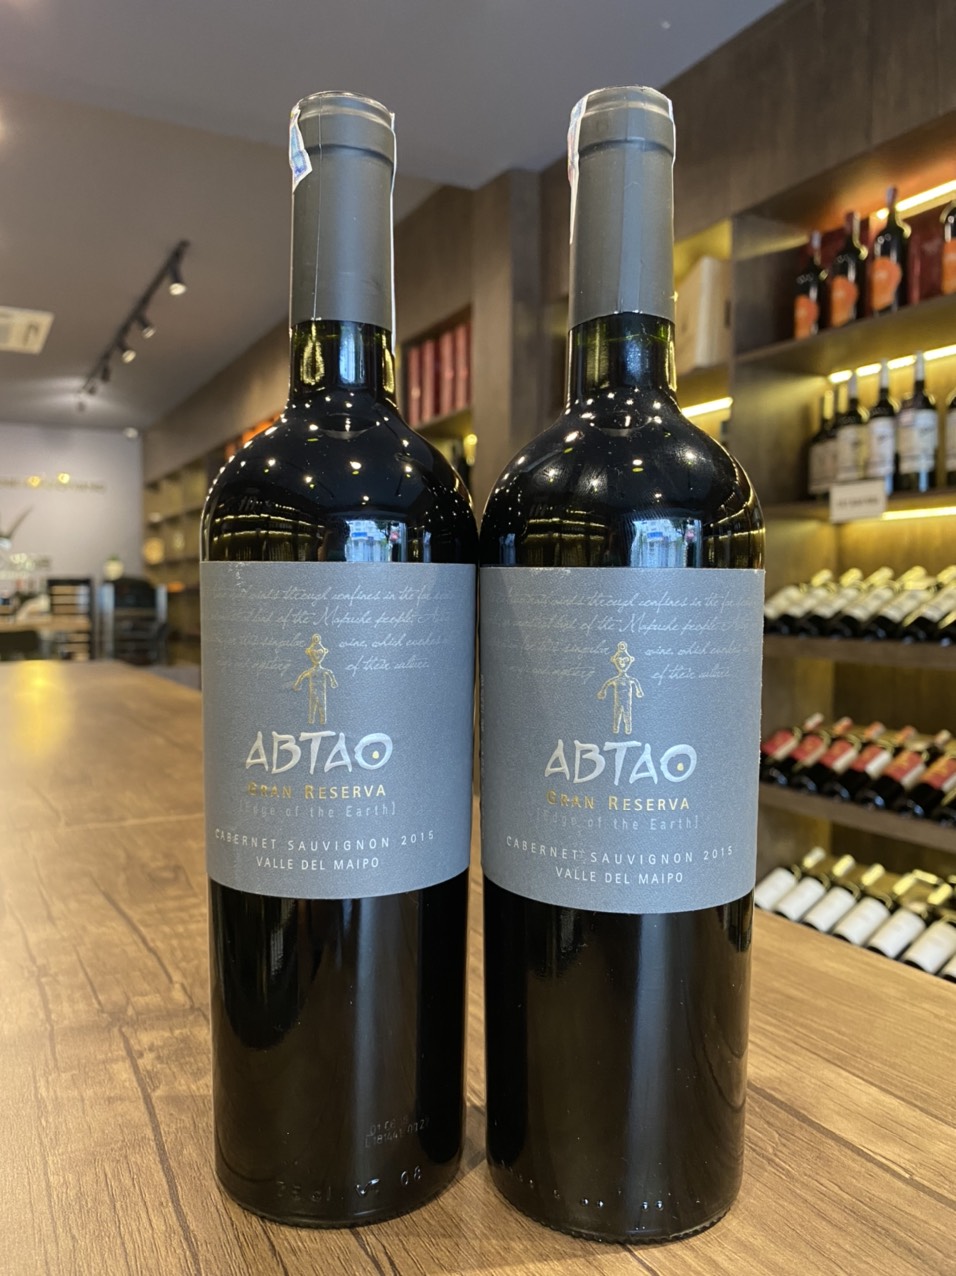 Rượu Vang Chile Abtao Gran Cabernet Sauvignon - một trong những lựa chọn hoàn hảo